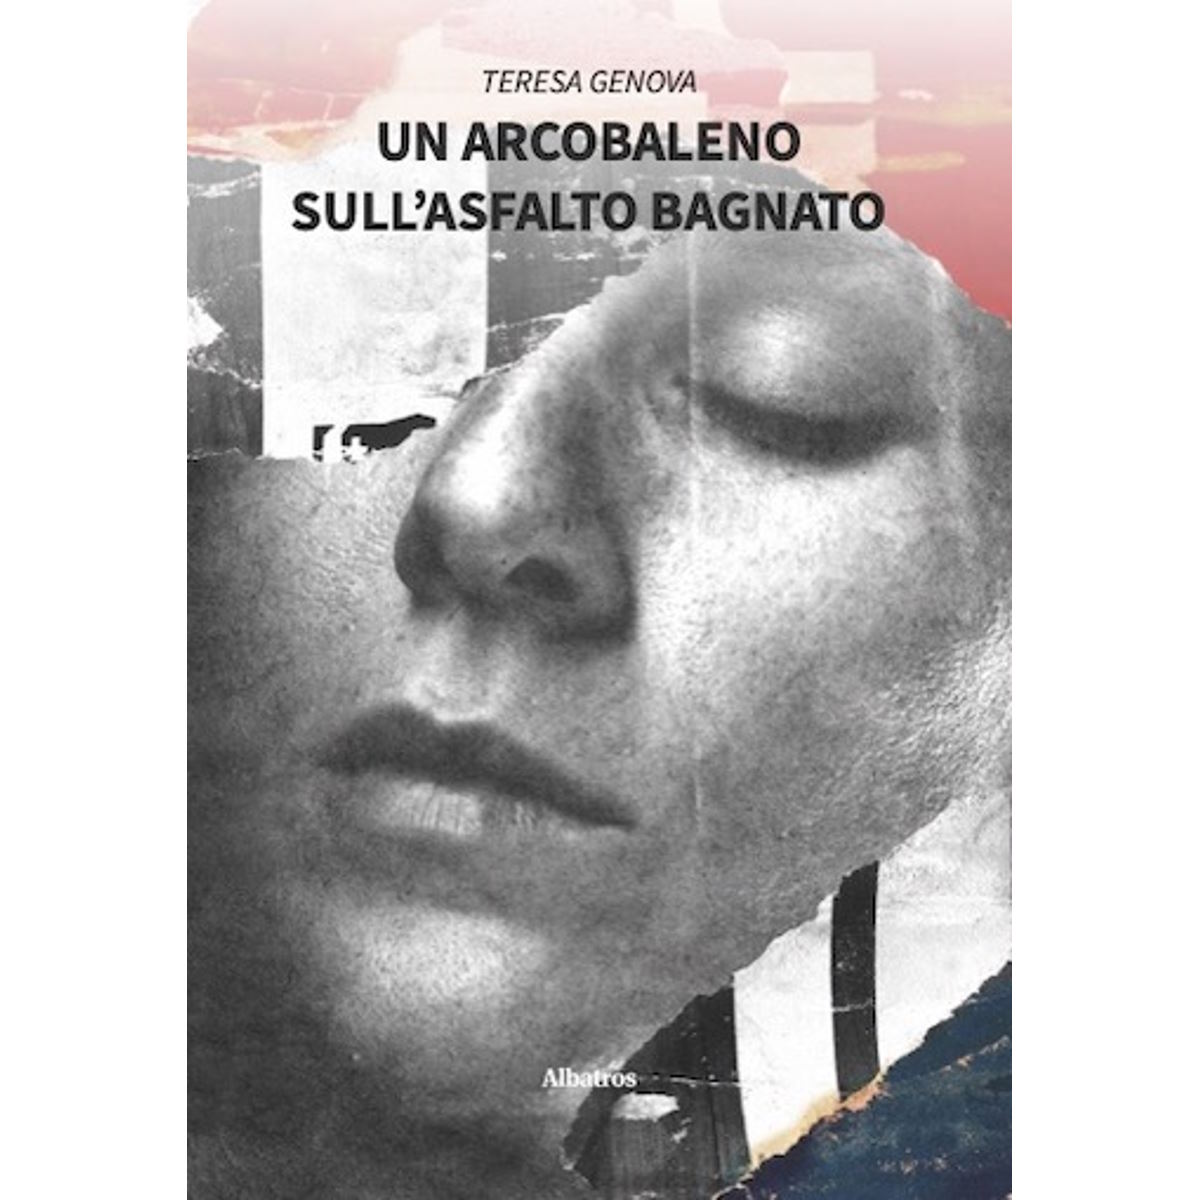 Il nuovo romanzo di Teresa Genova: è in libreria Un arcobaleno sull'asfalto bagnato